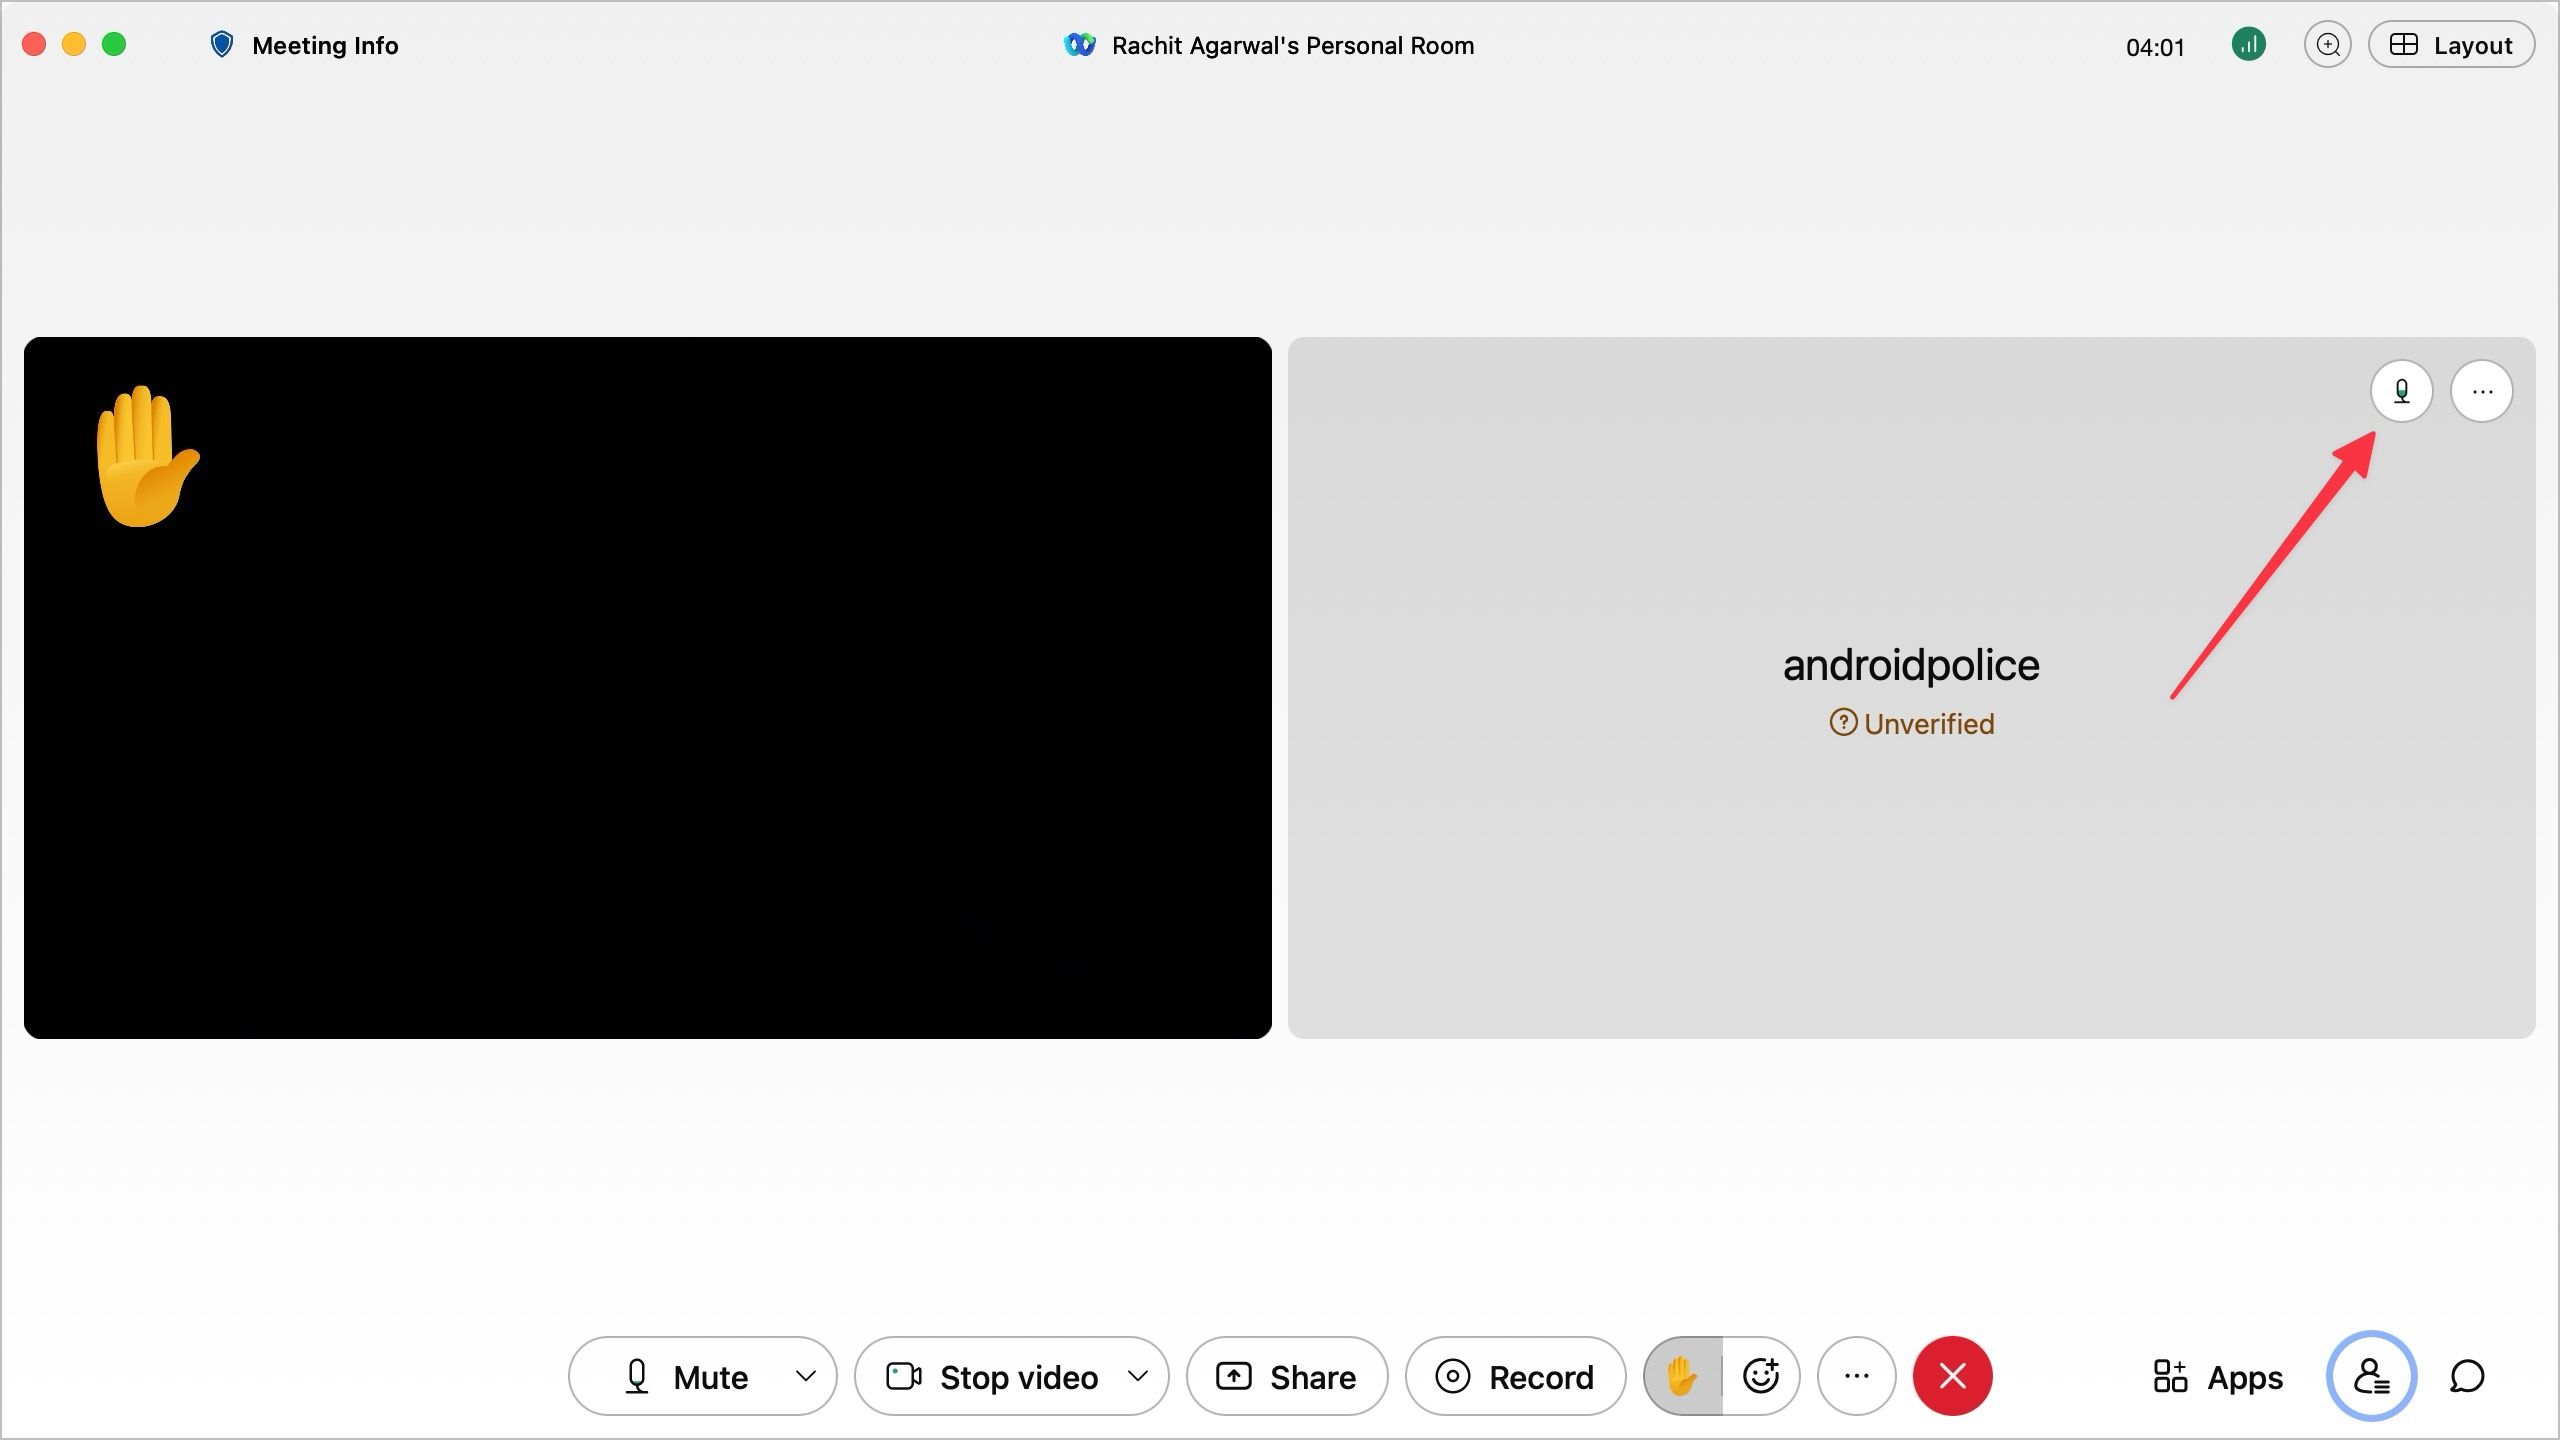 Captura de tela da janela de videochamada Webex mostrando os participantes